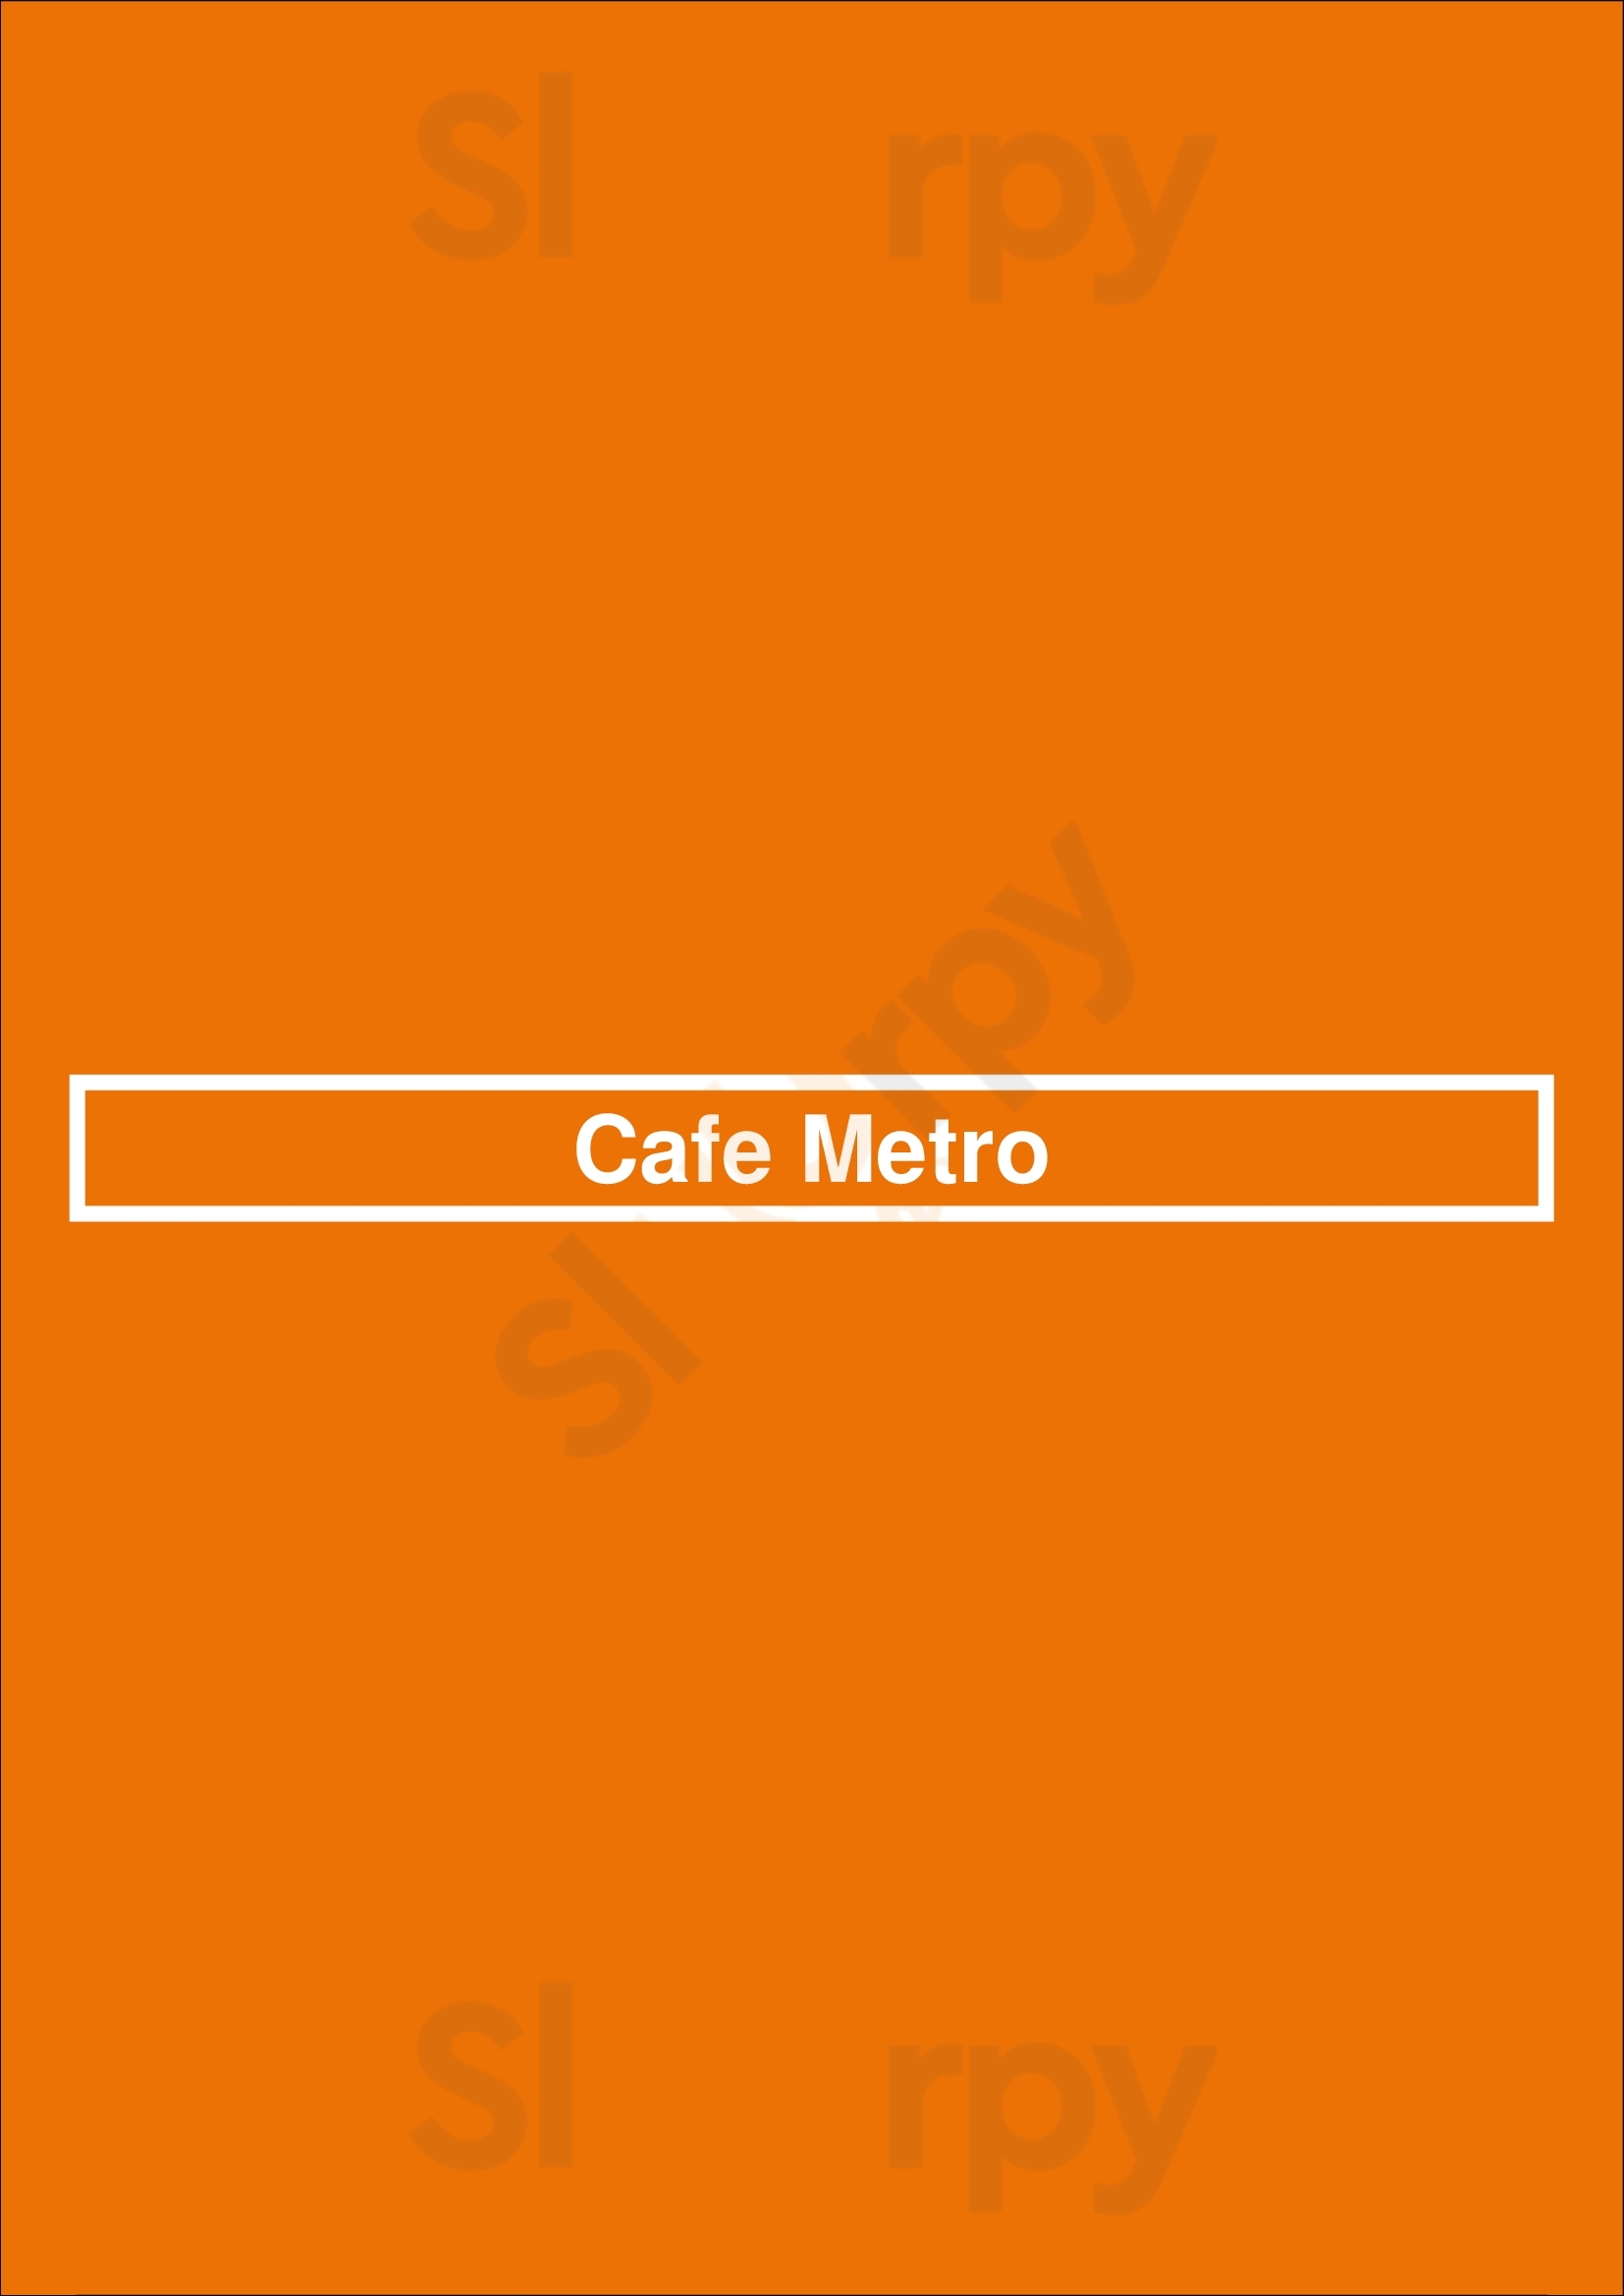 Cafe Metro New York City Menu - 1